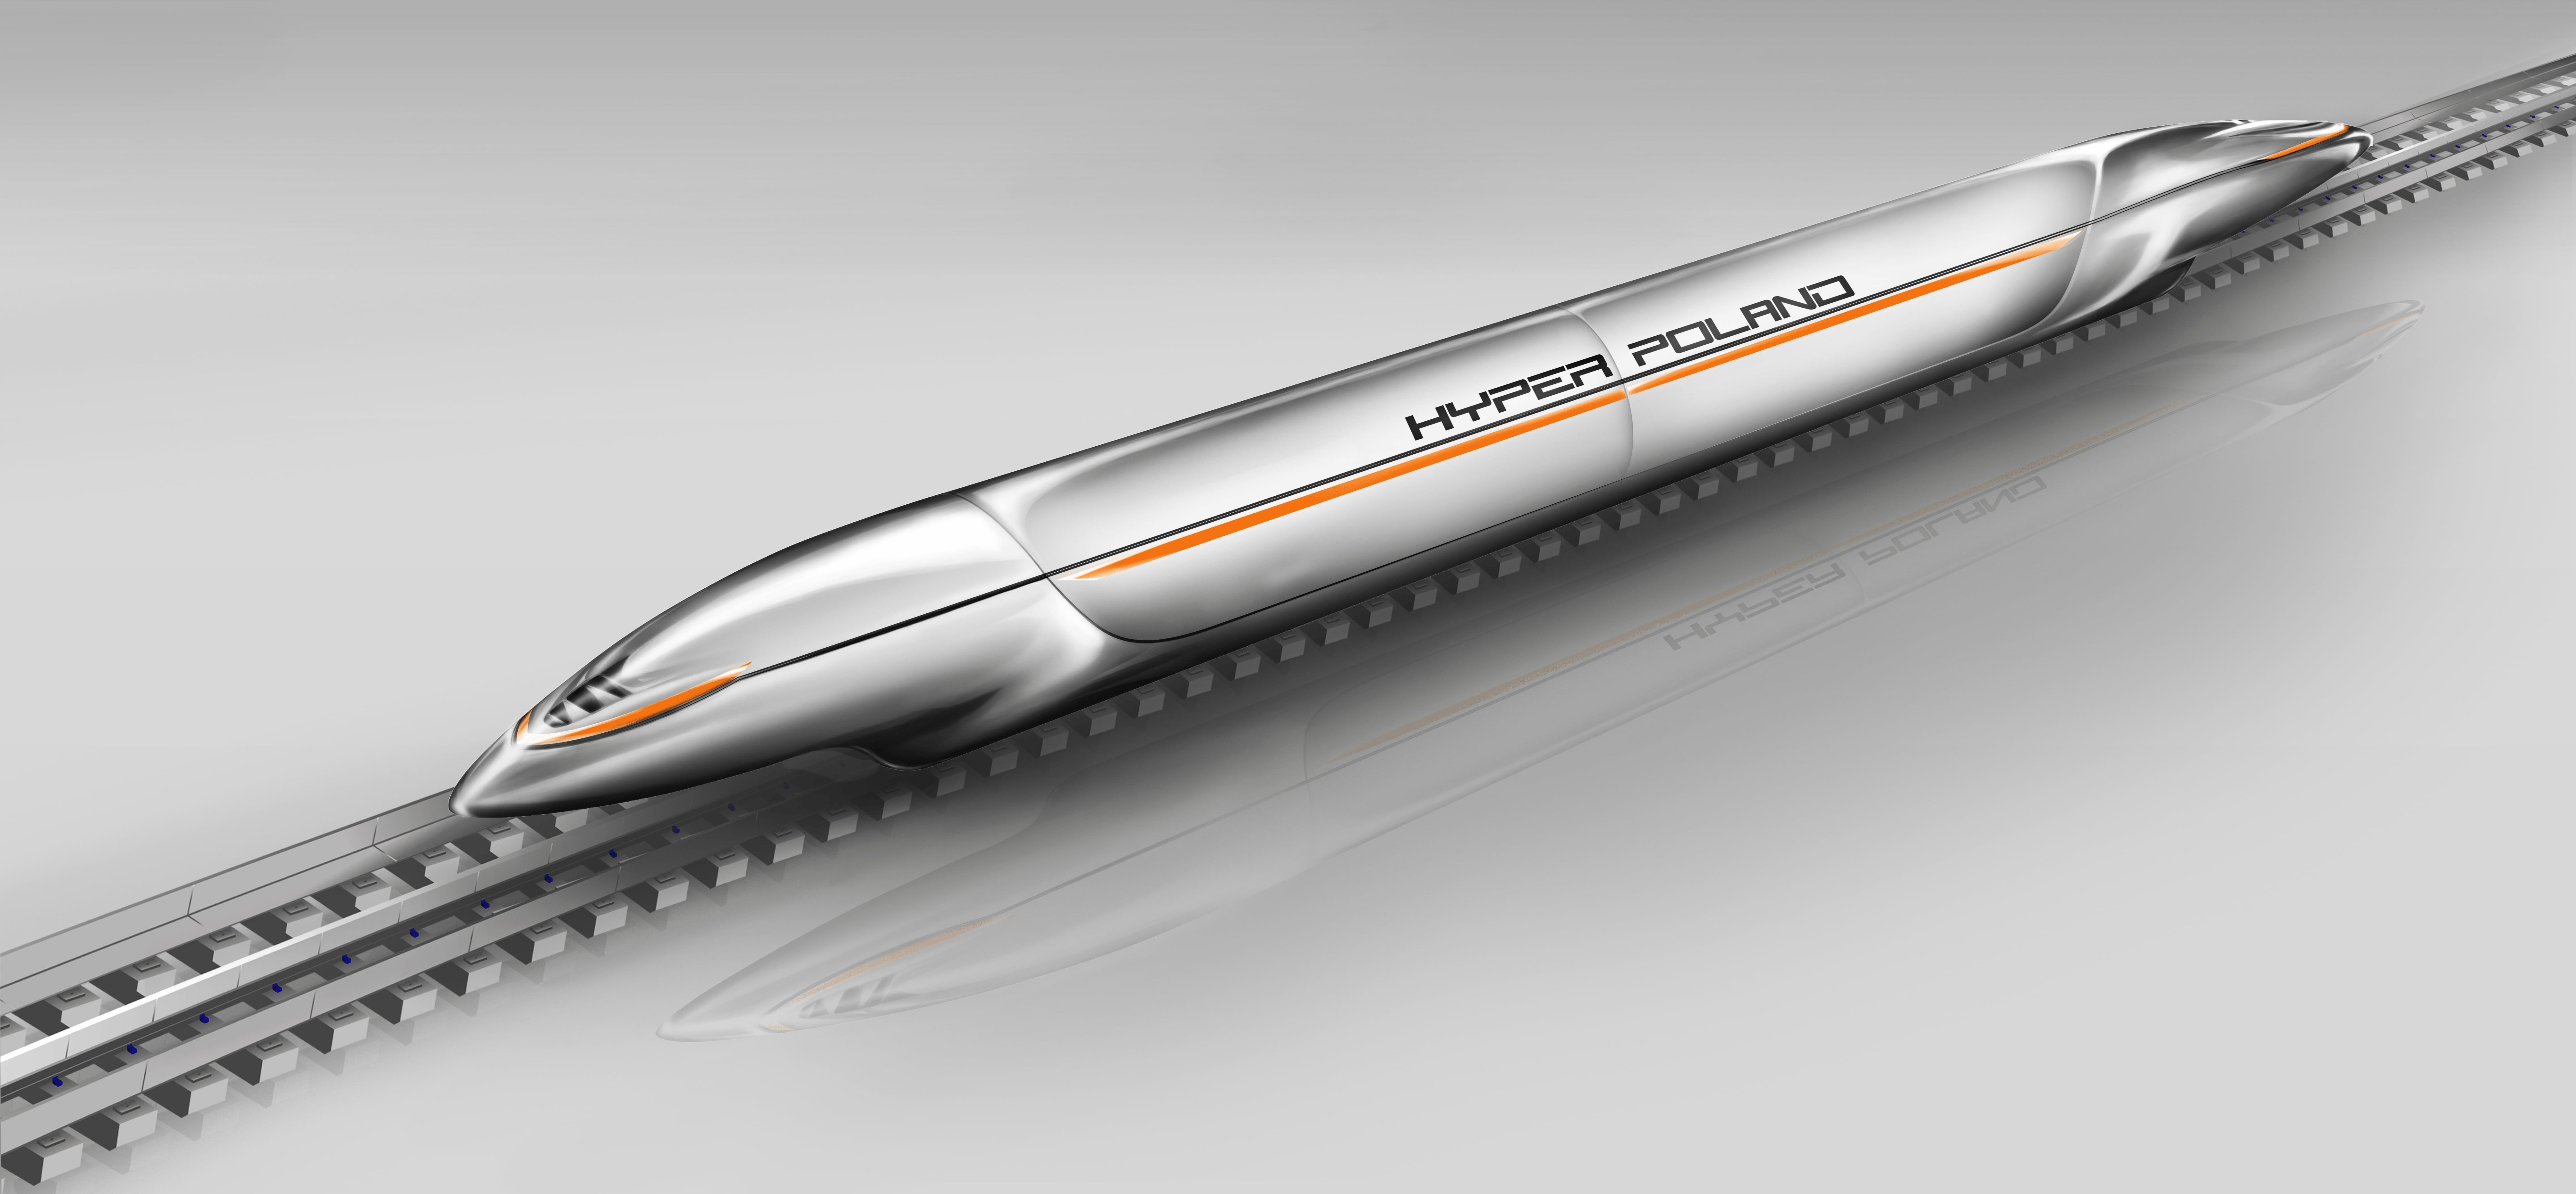 Hyper Poland uzbierało 100 proc. kwoty do budowy hyperloopa